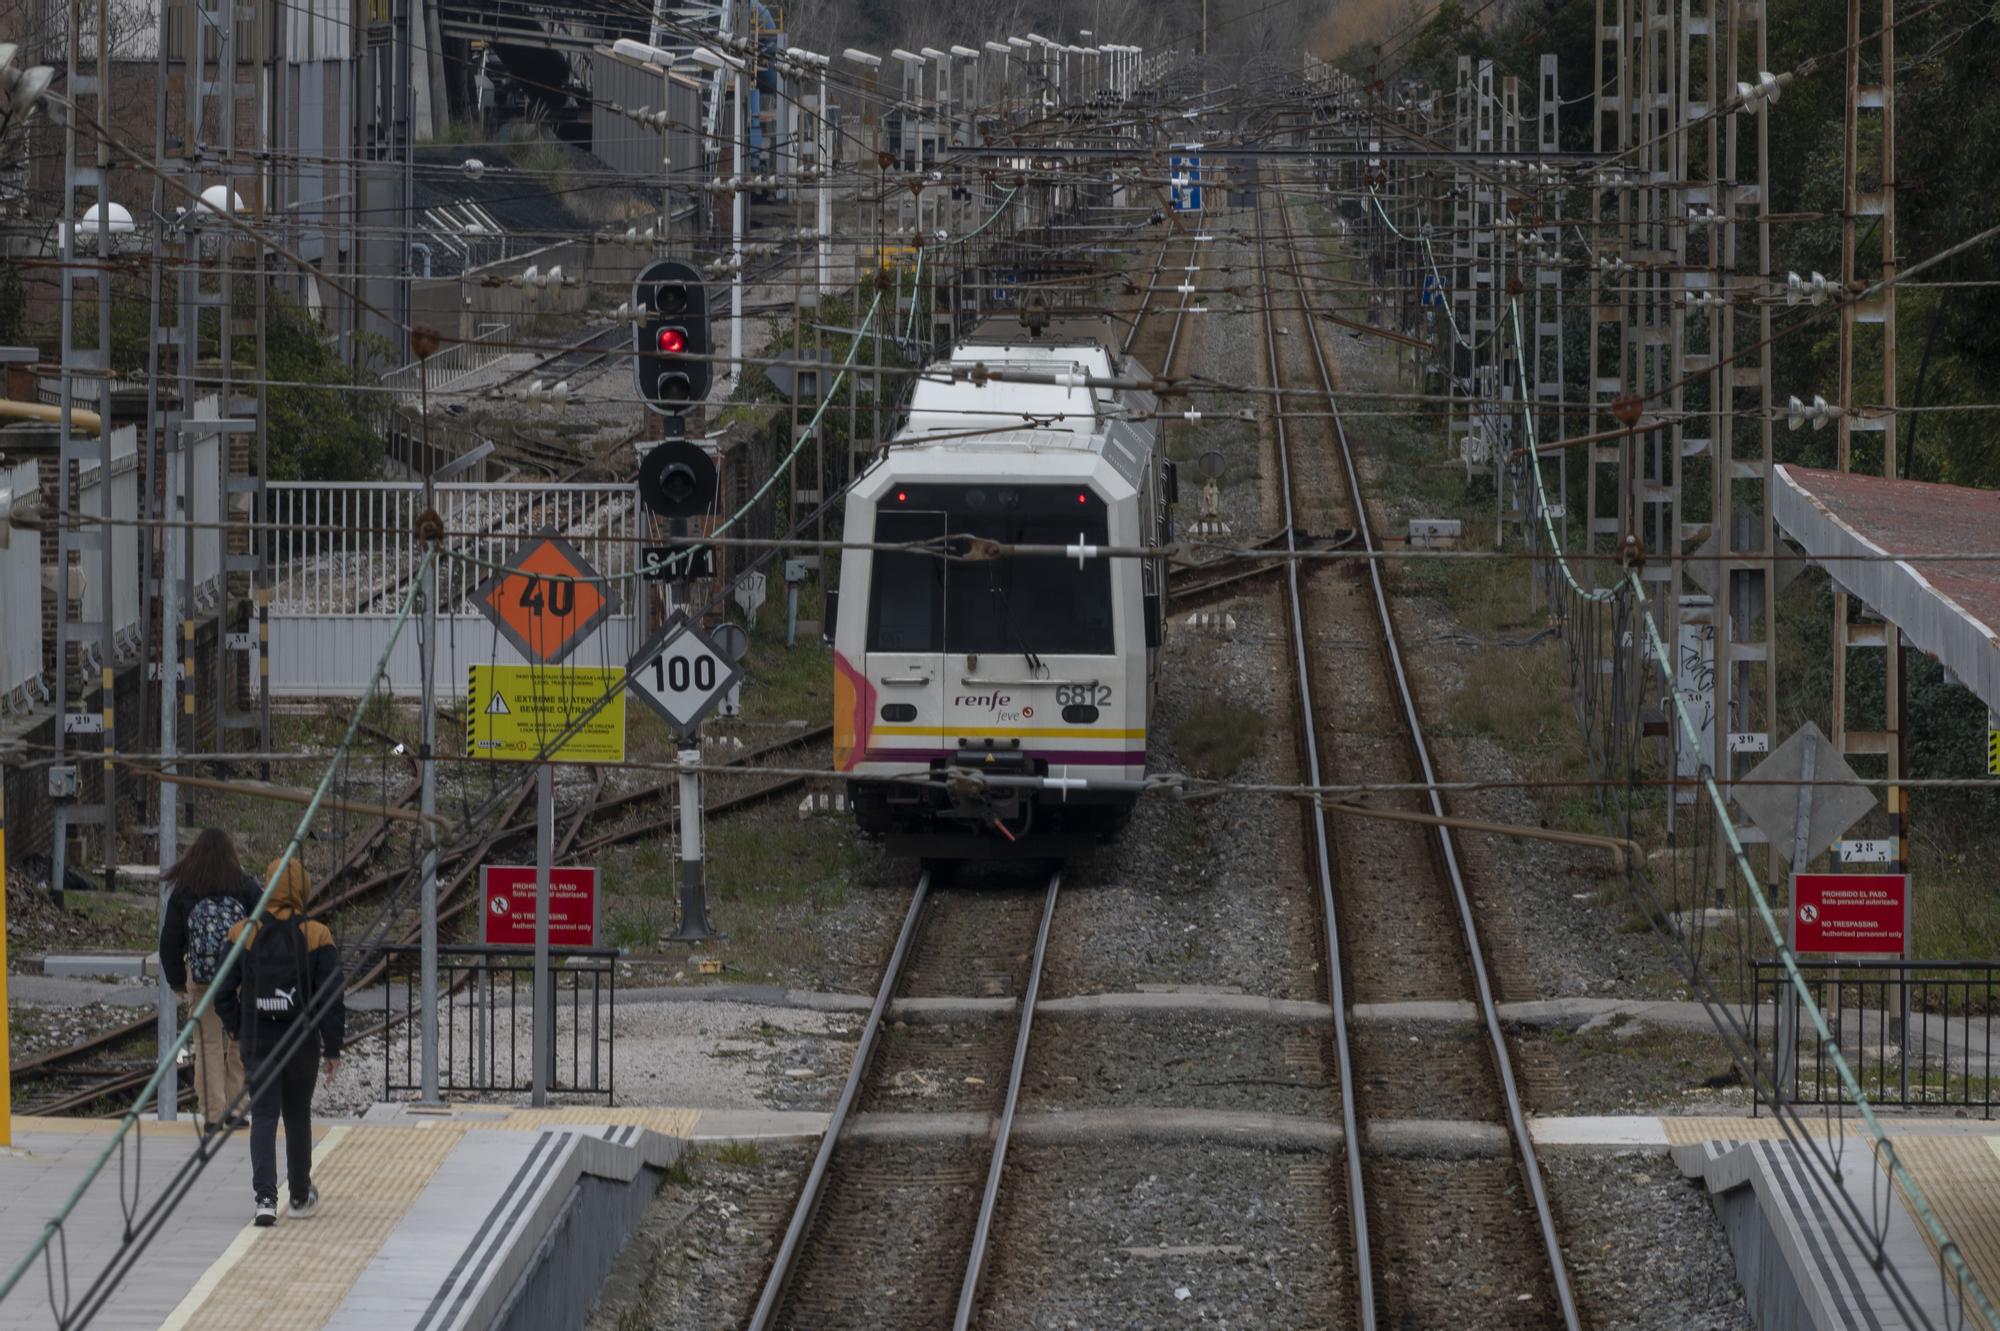 Los trenes de Cantabria y Asturias se retrasarán dos años